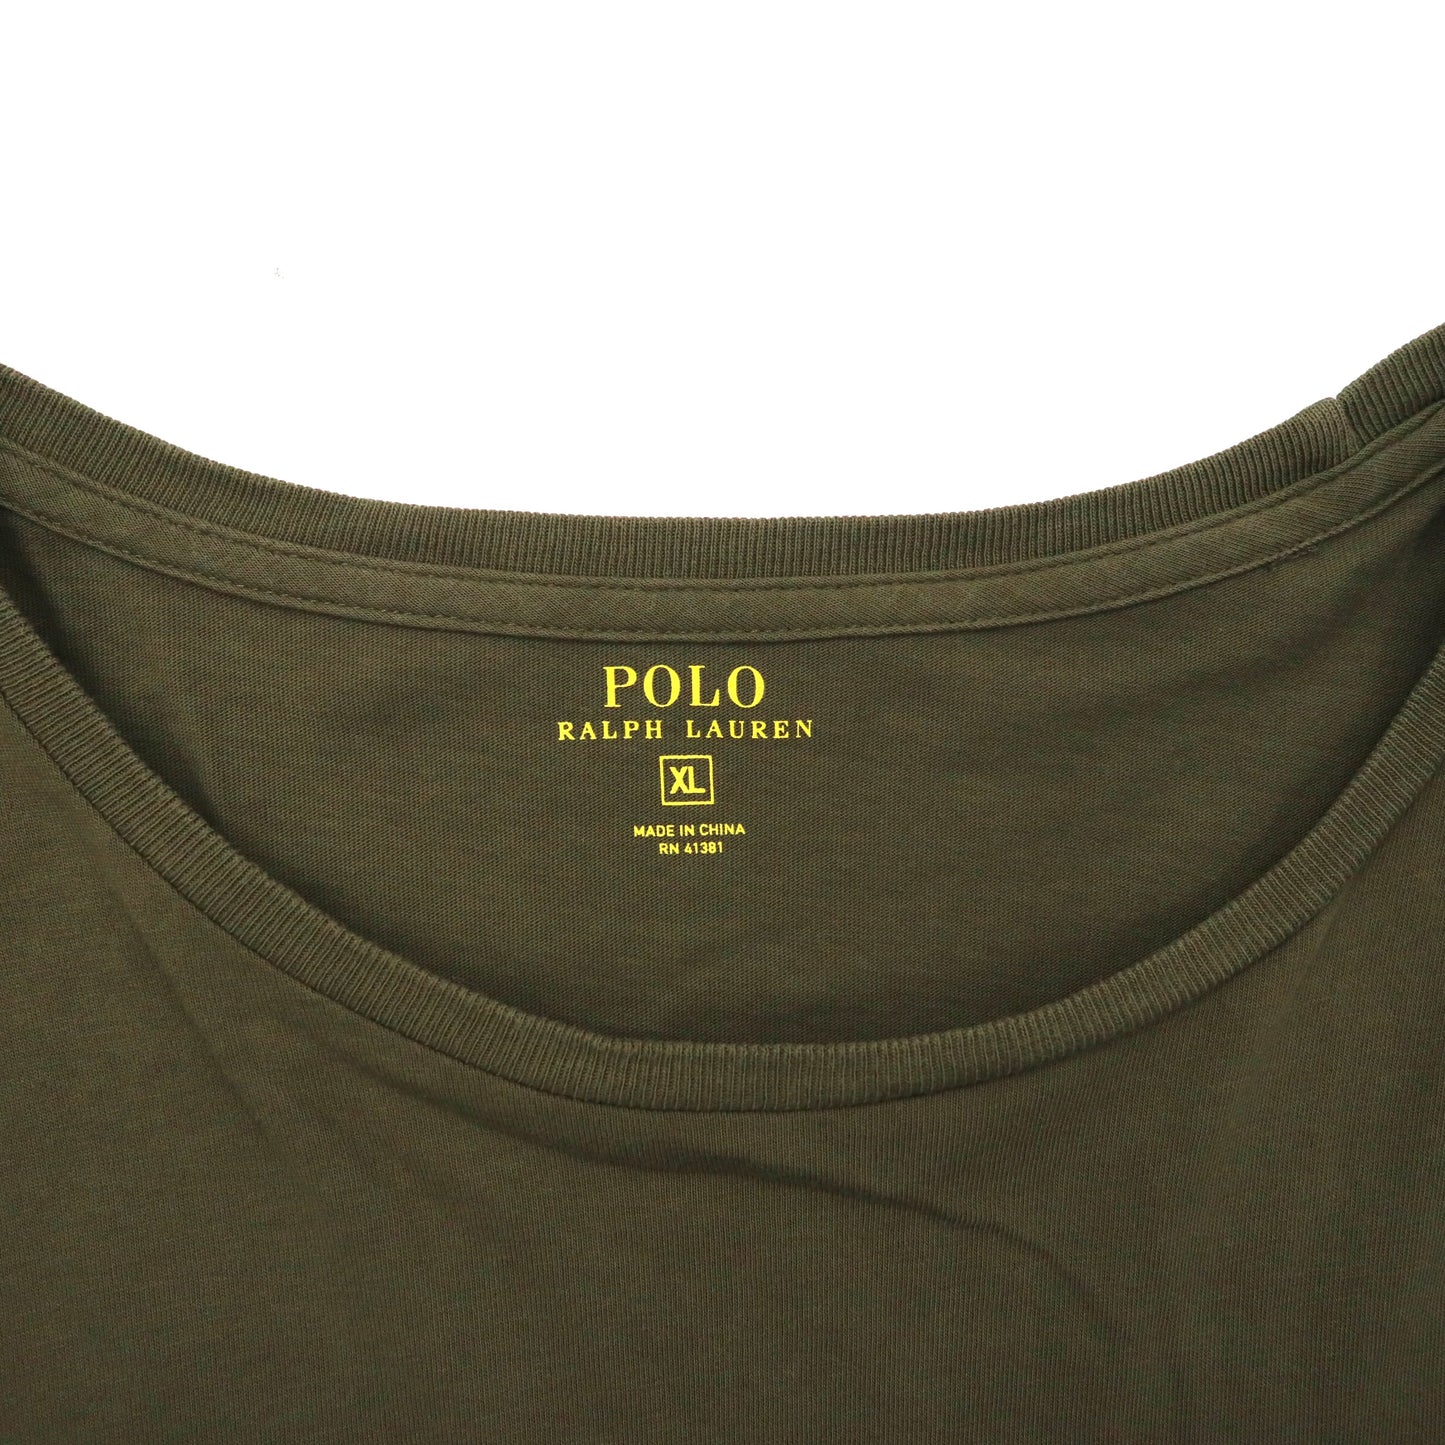 POLO RALPH LAUREN ビッグサイズ ロングスリーブTシャツ XL カーキ コットン ポケット付き スモールポニー刺繍